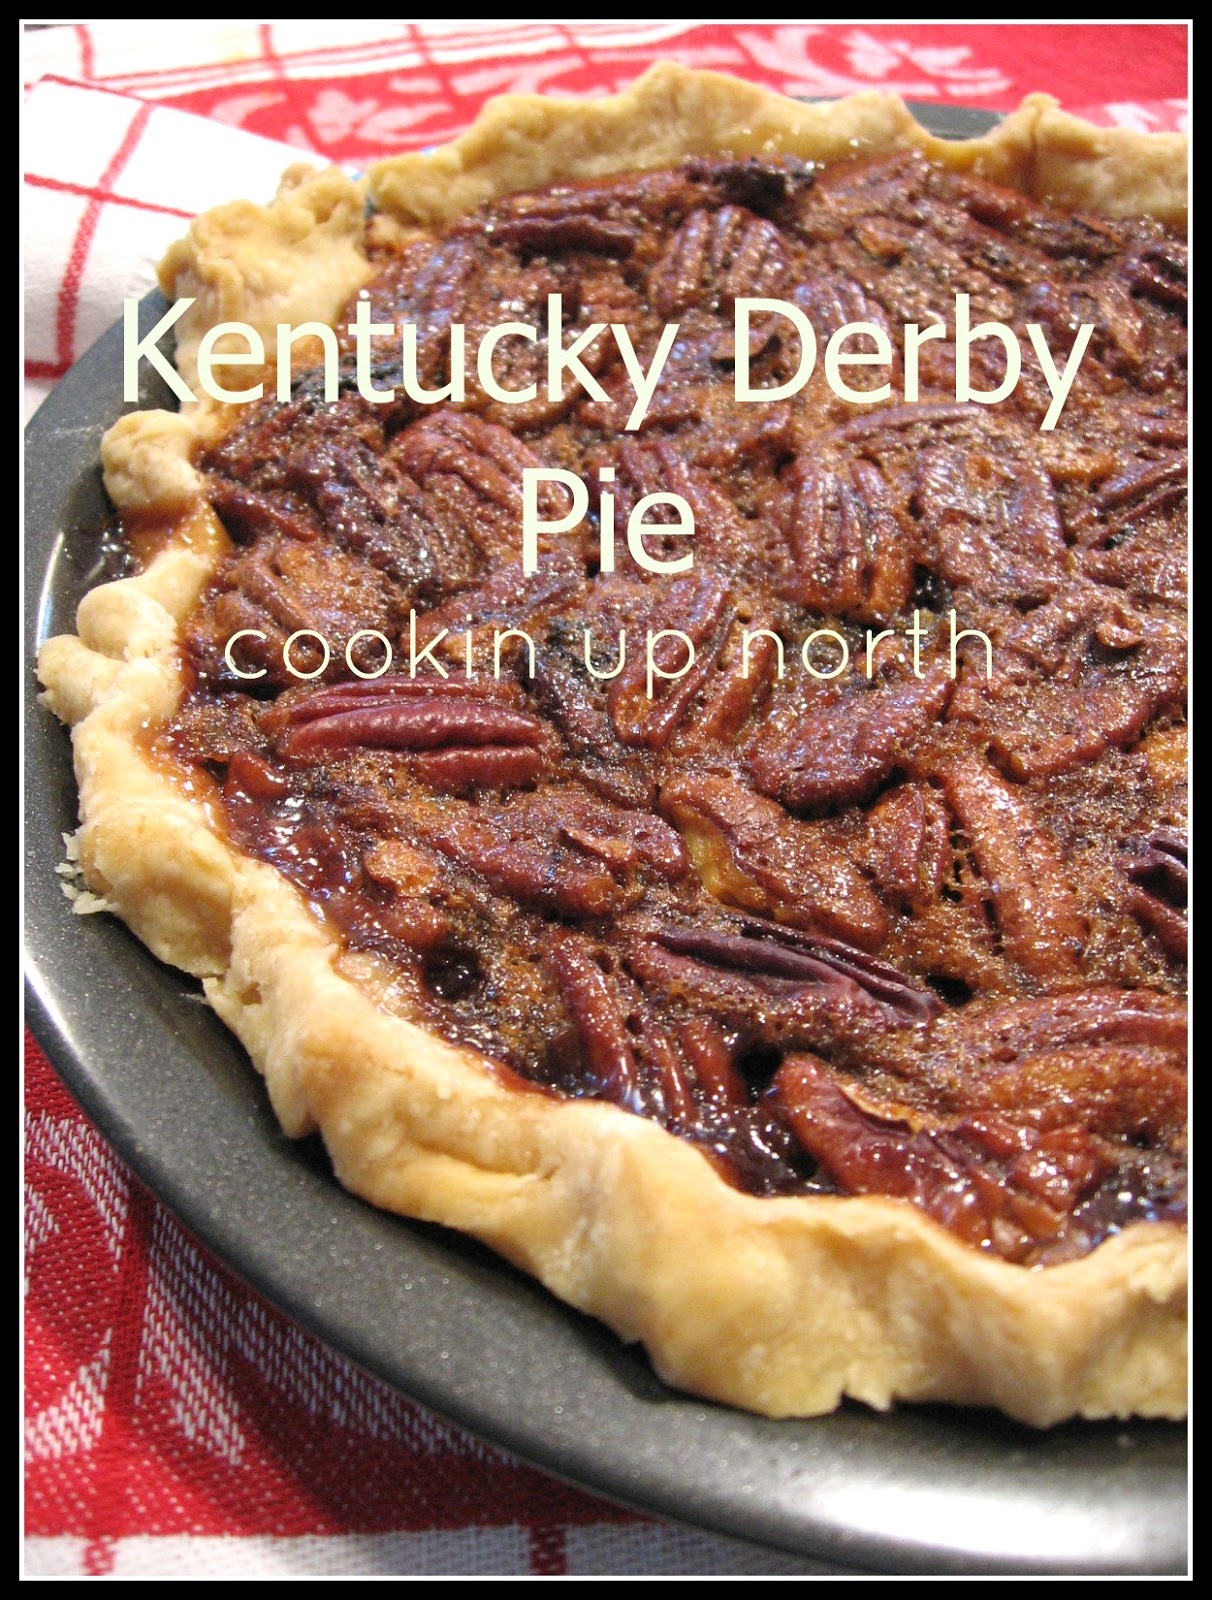 cookin' up north: Kentucky Derby Pie